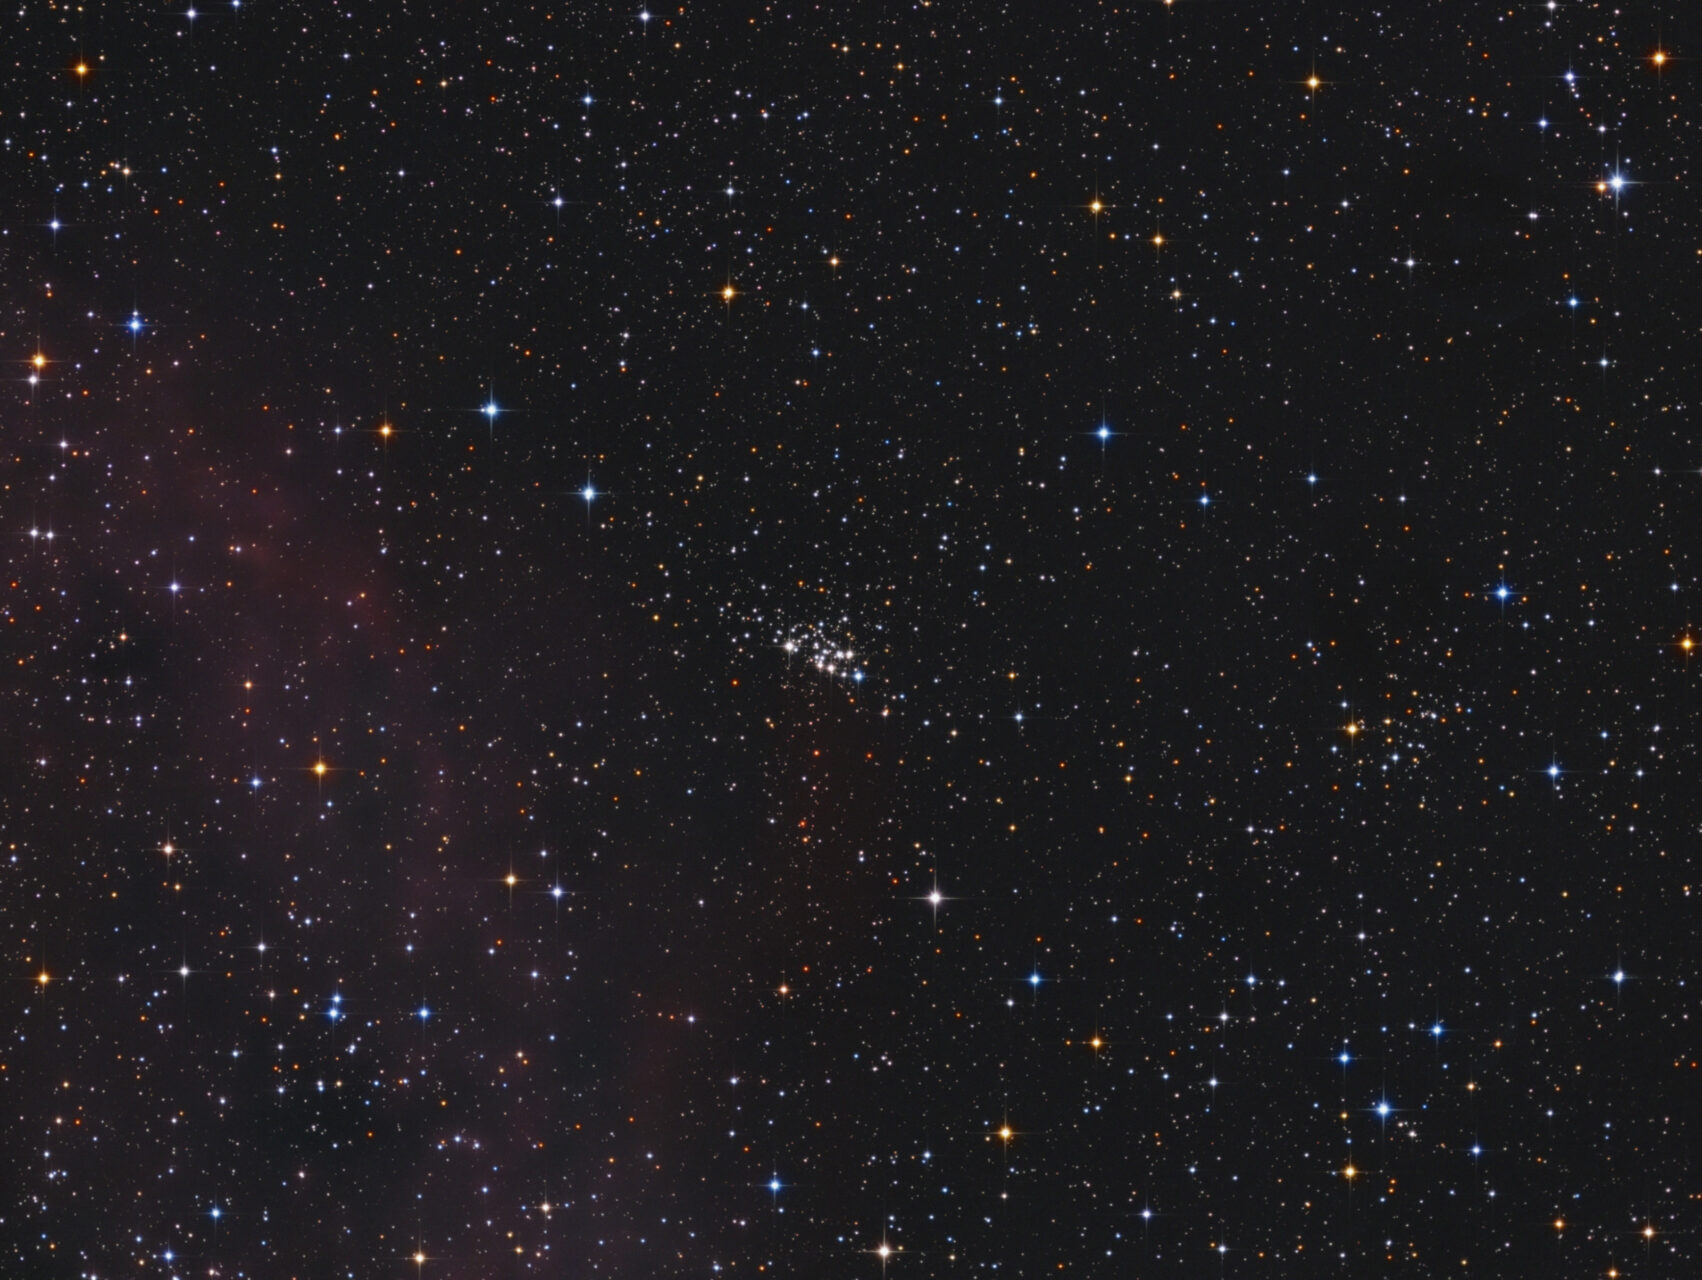 NGC 7510